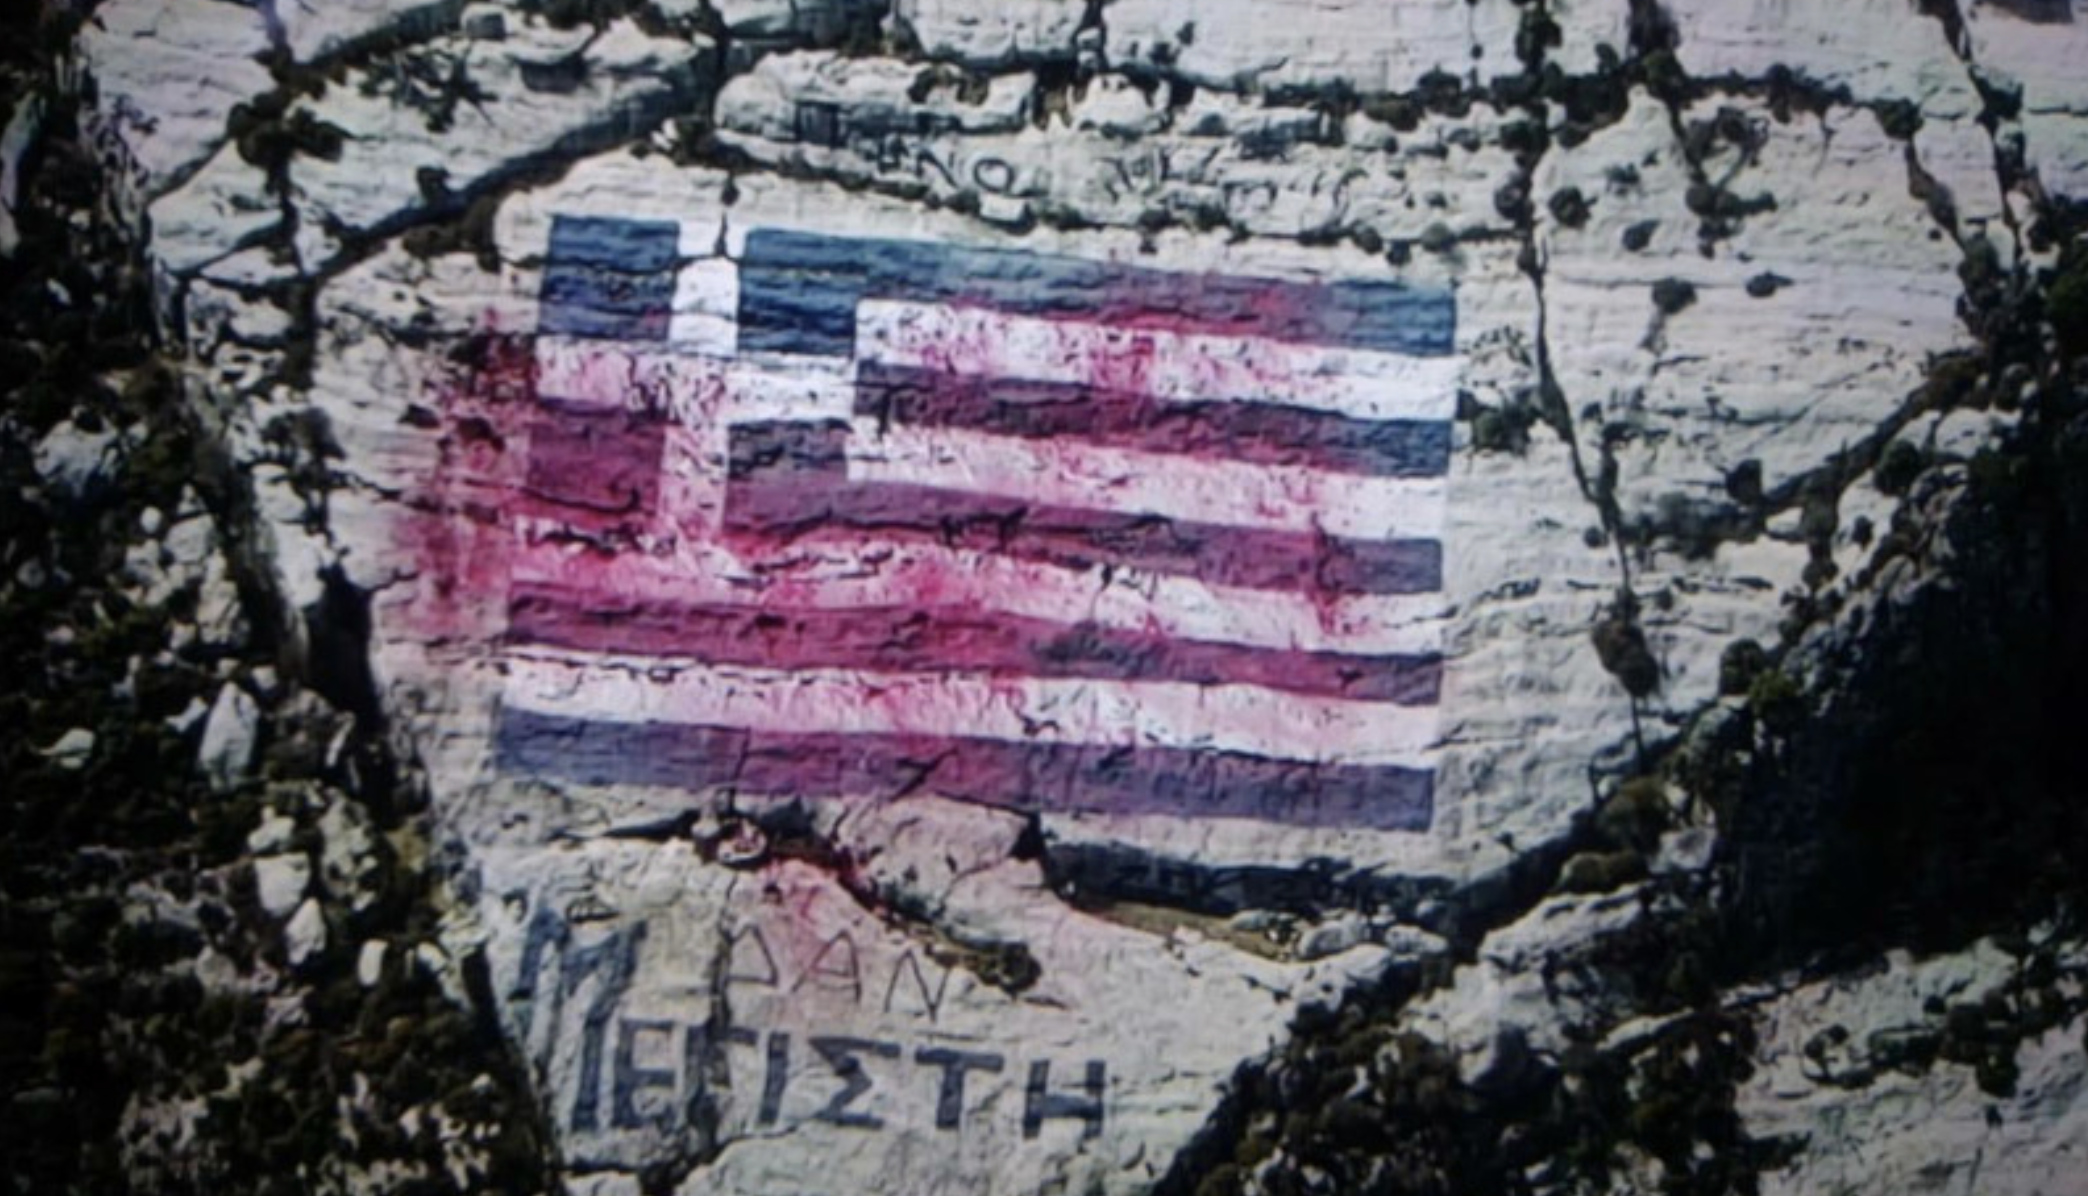 Με θεσσαλονικιώτικα χρώματα-δωρεά βάφτηκε ξανά η λεηλατημένη σημαία του Καστελόριζου